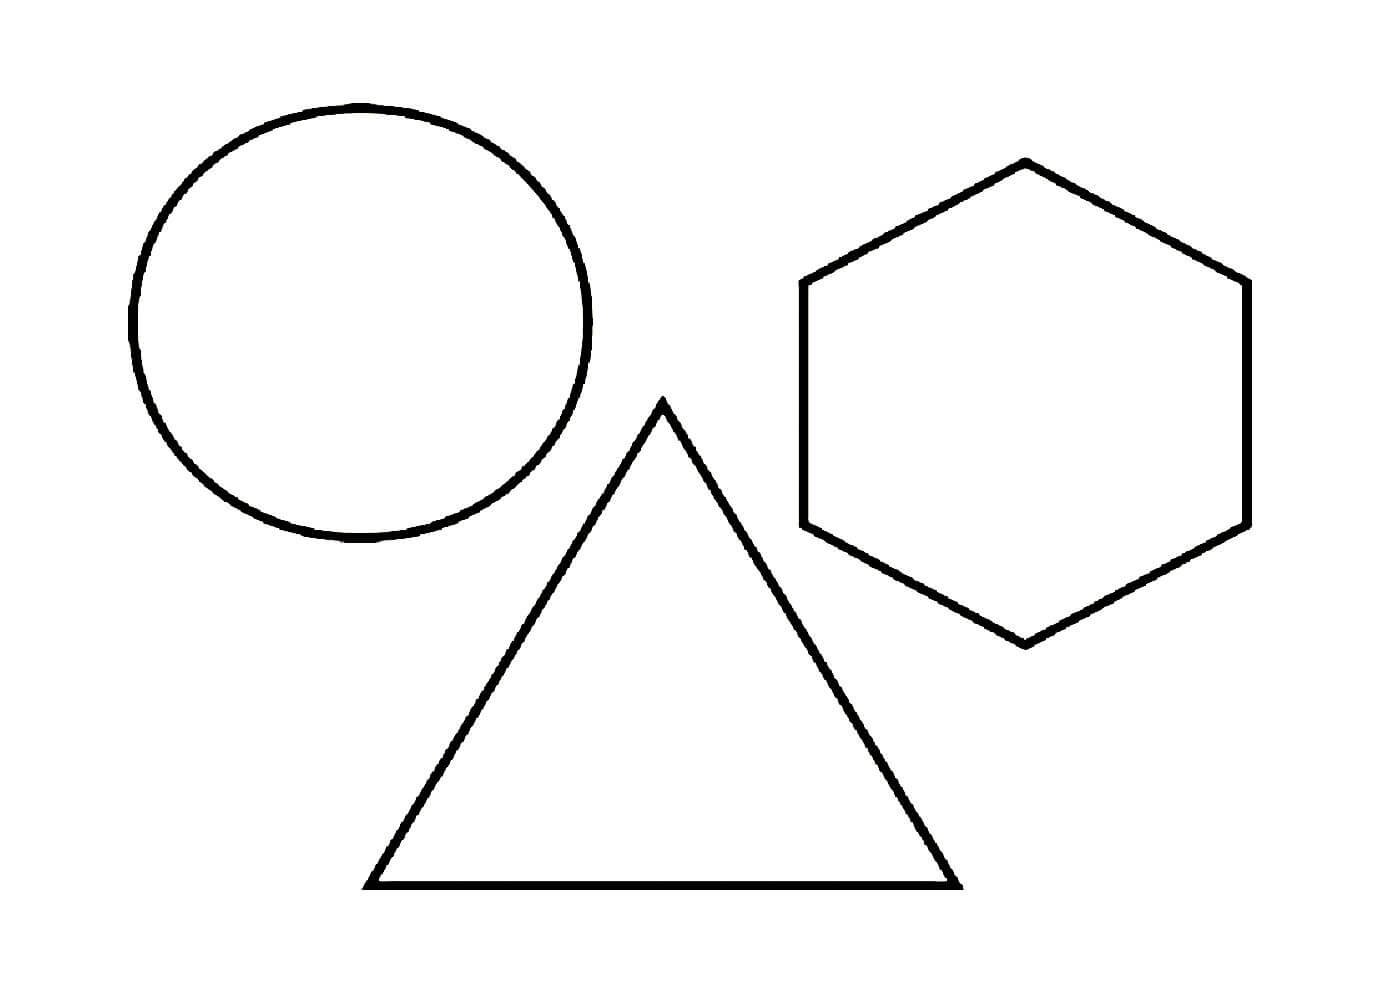 Раскраска для детей 2-3 года треугольник, круг, квадрат распечатать